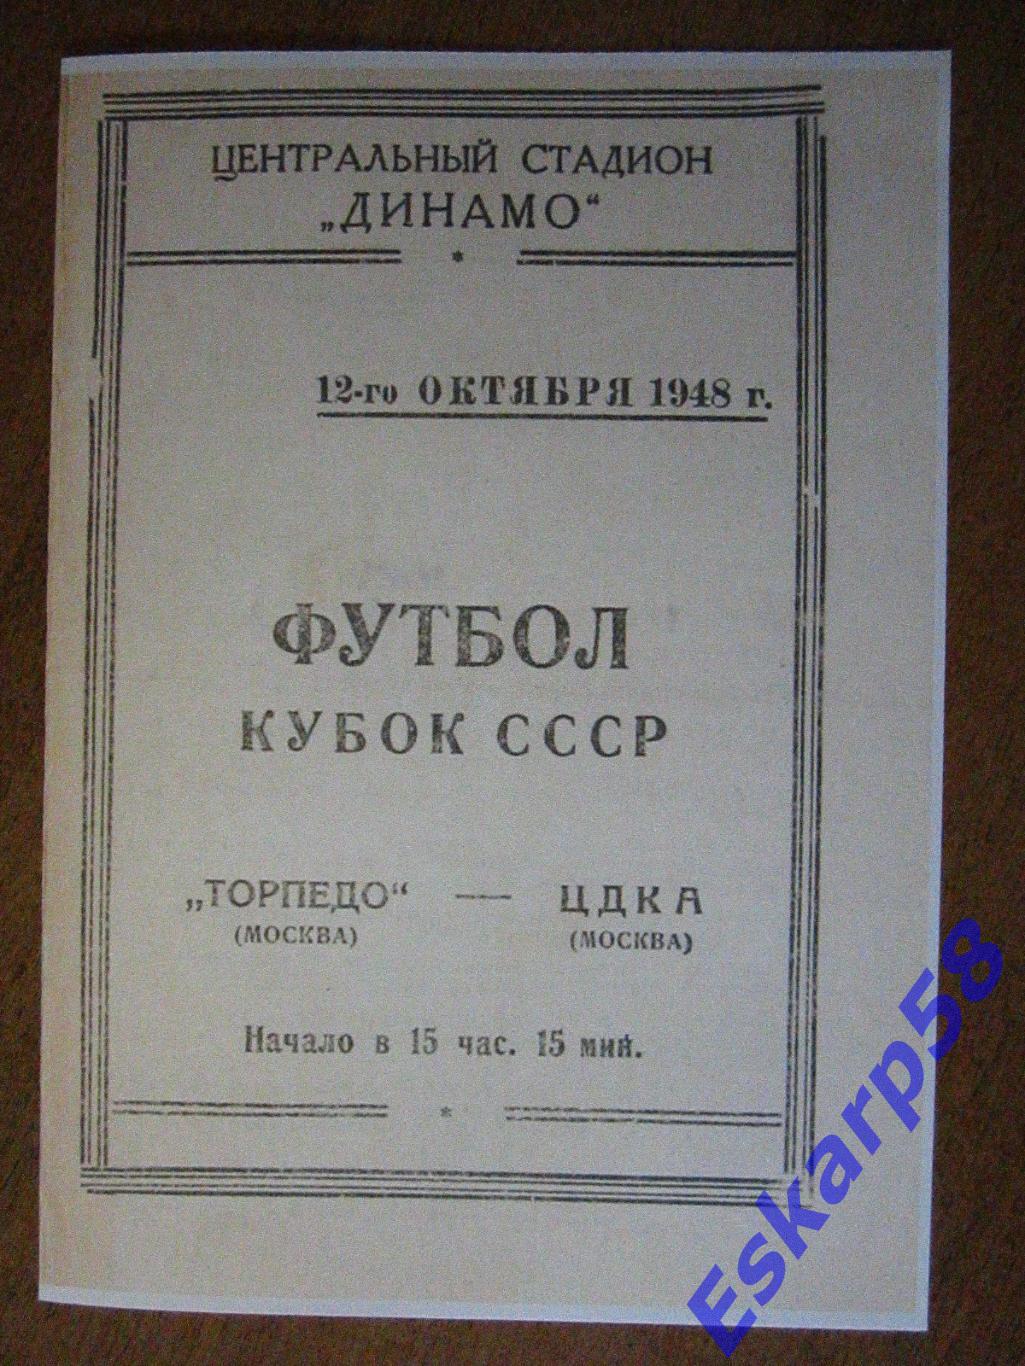 1948. ЦДКА-Торпедо.Кубок.12.10. Копия